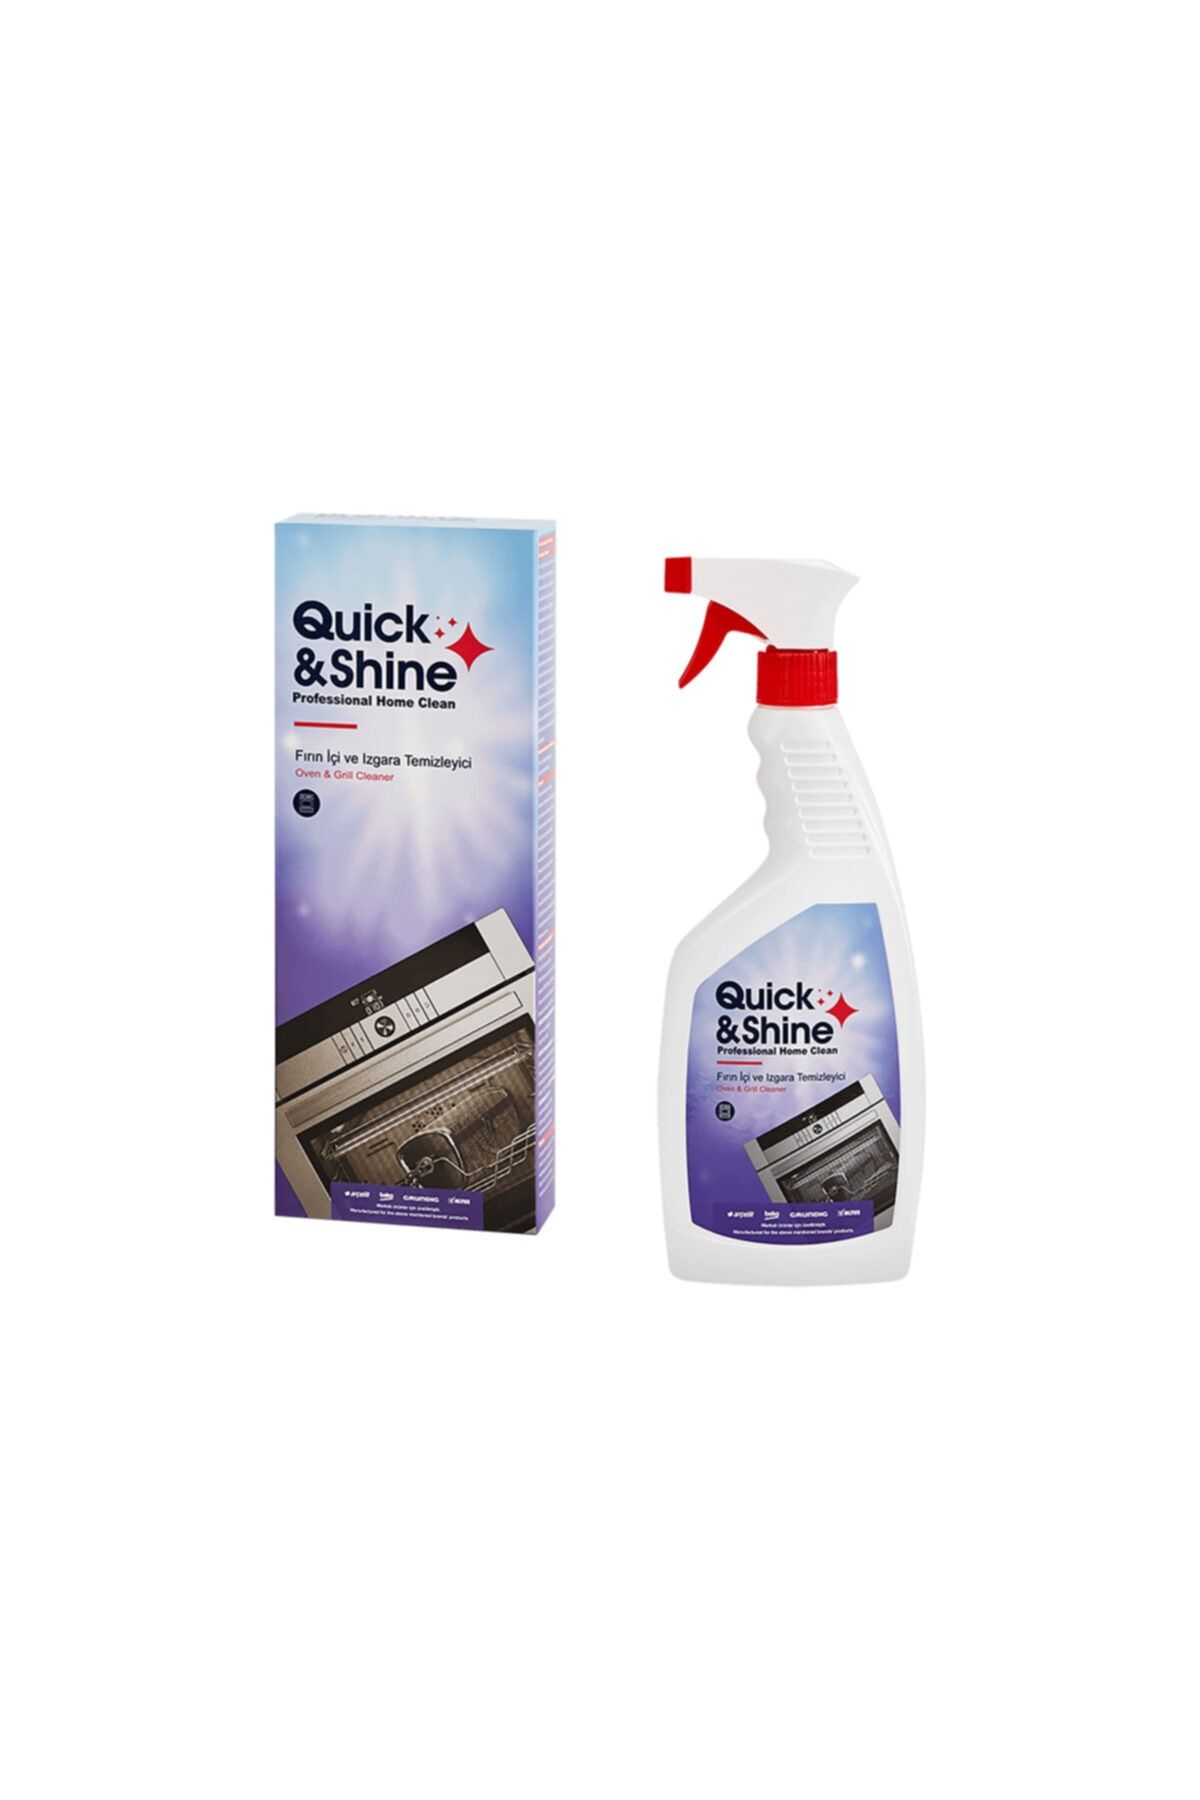 Quick&Shine Quick & Shine Temizlik Ve Bakım Ürünleri Fırın Ic?i Ve Izgara Temizleyici